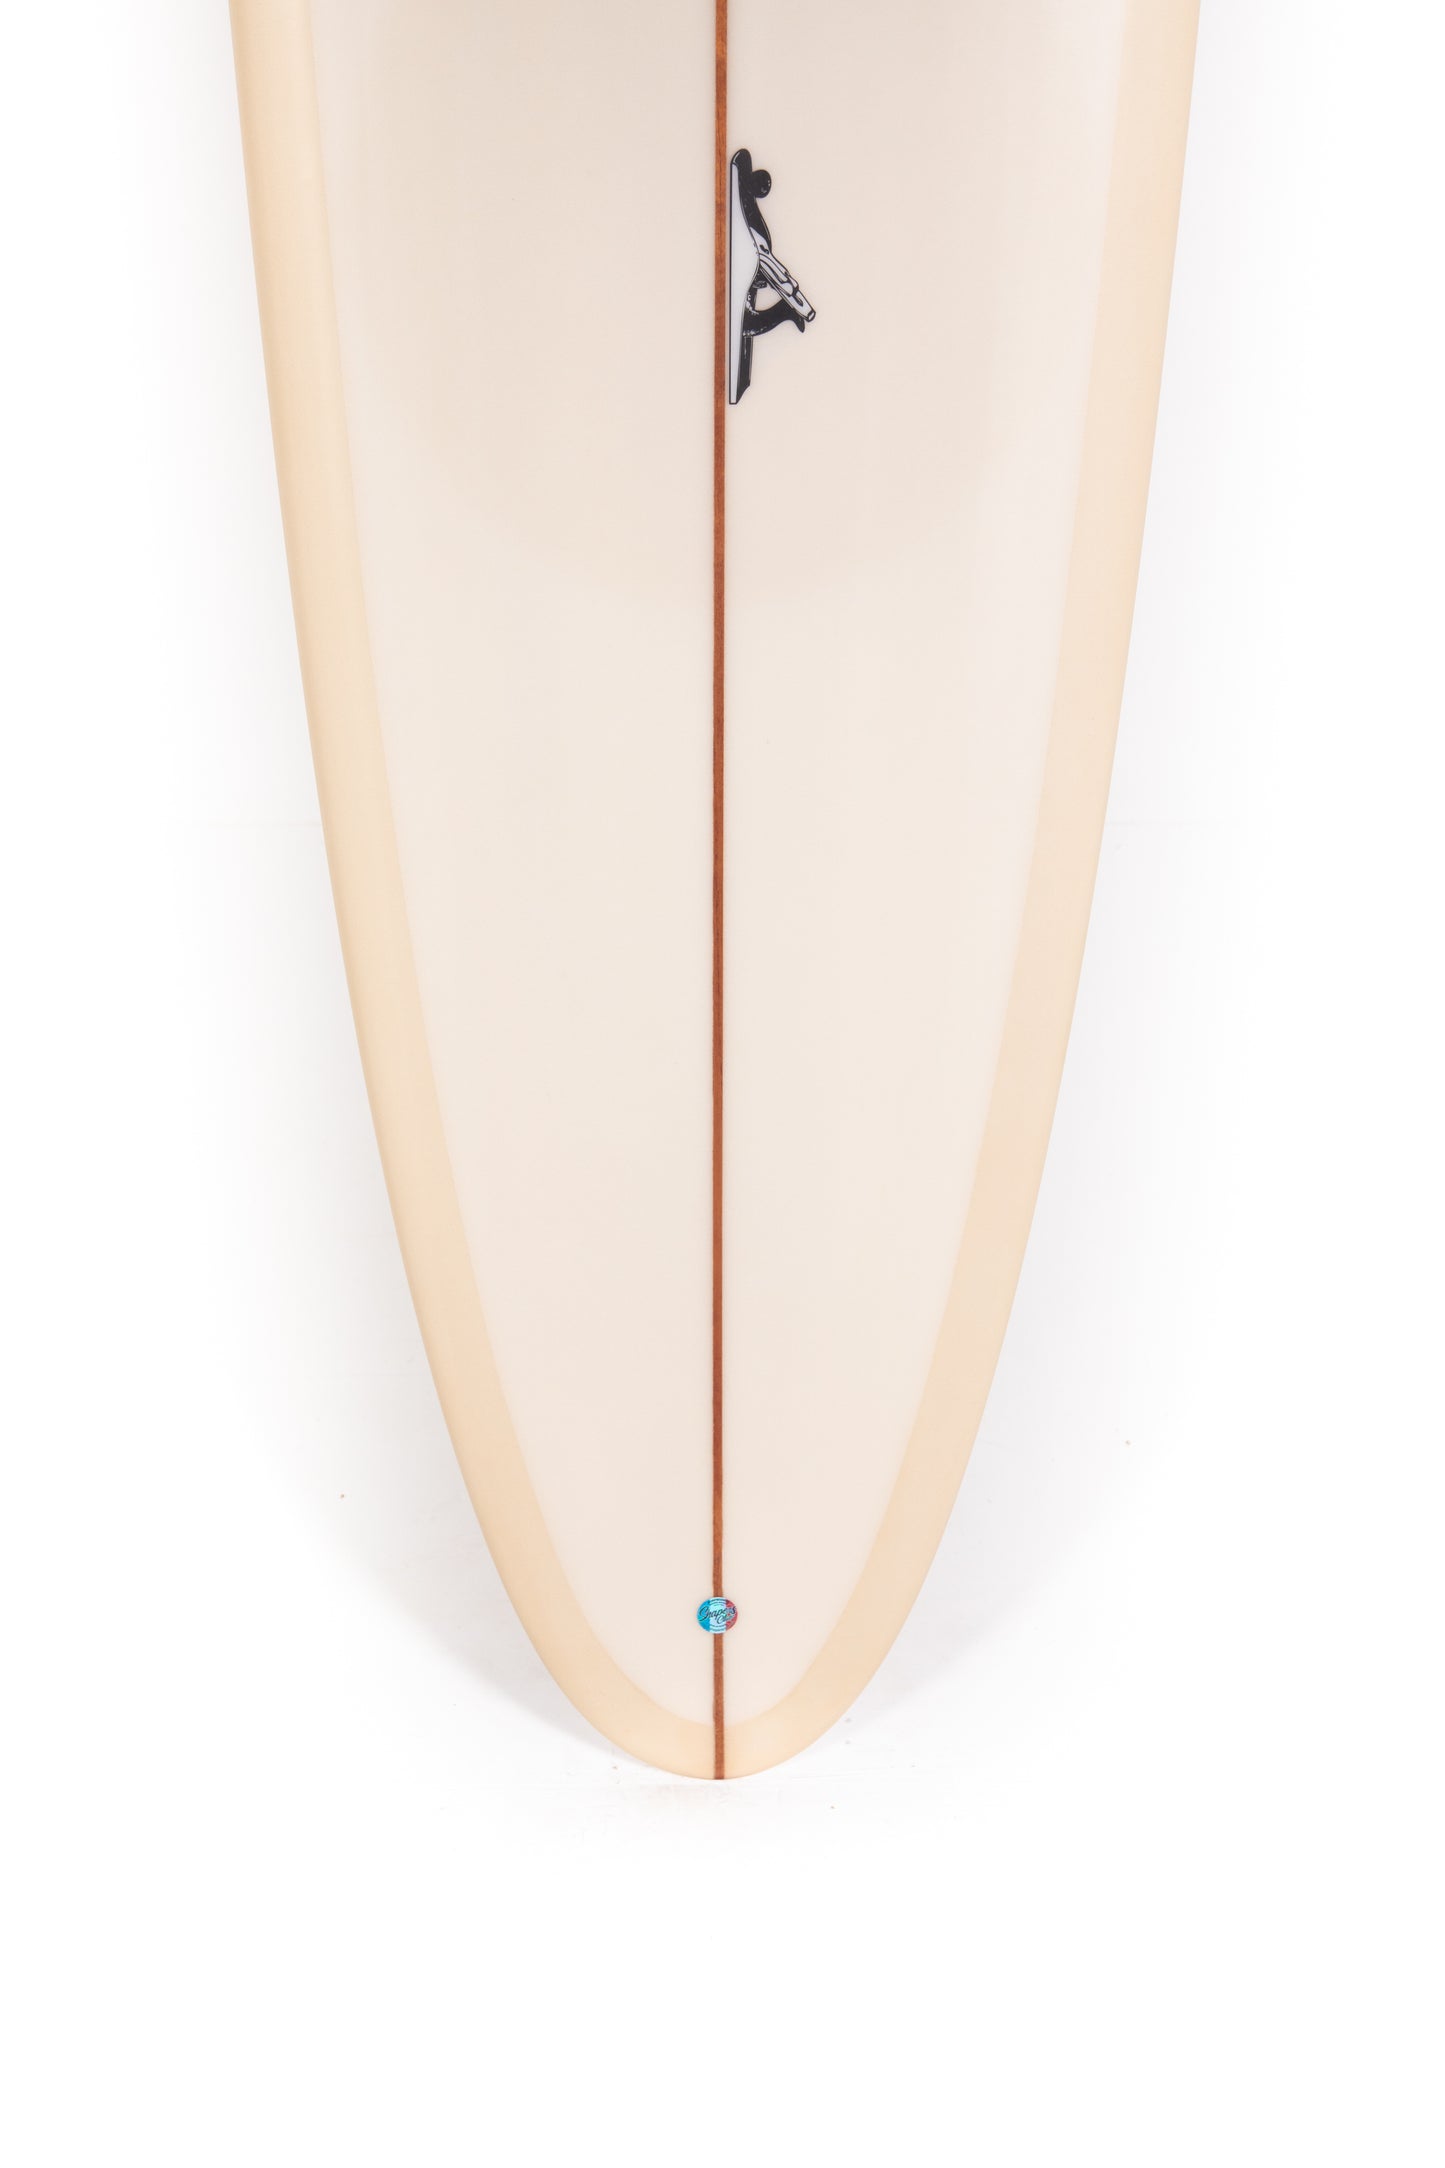 
                  
                    Pukas-Surf-Shop-Thomas-Bexon-Surfboards-Wizl-Thomas-Bexon-9_8_-WIZL98SAND
                  
                